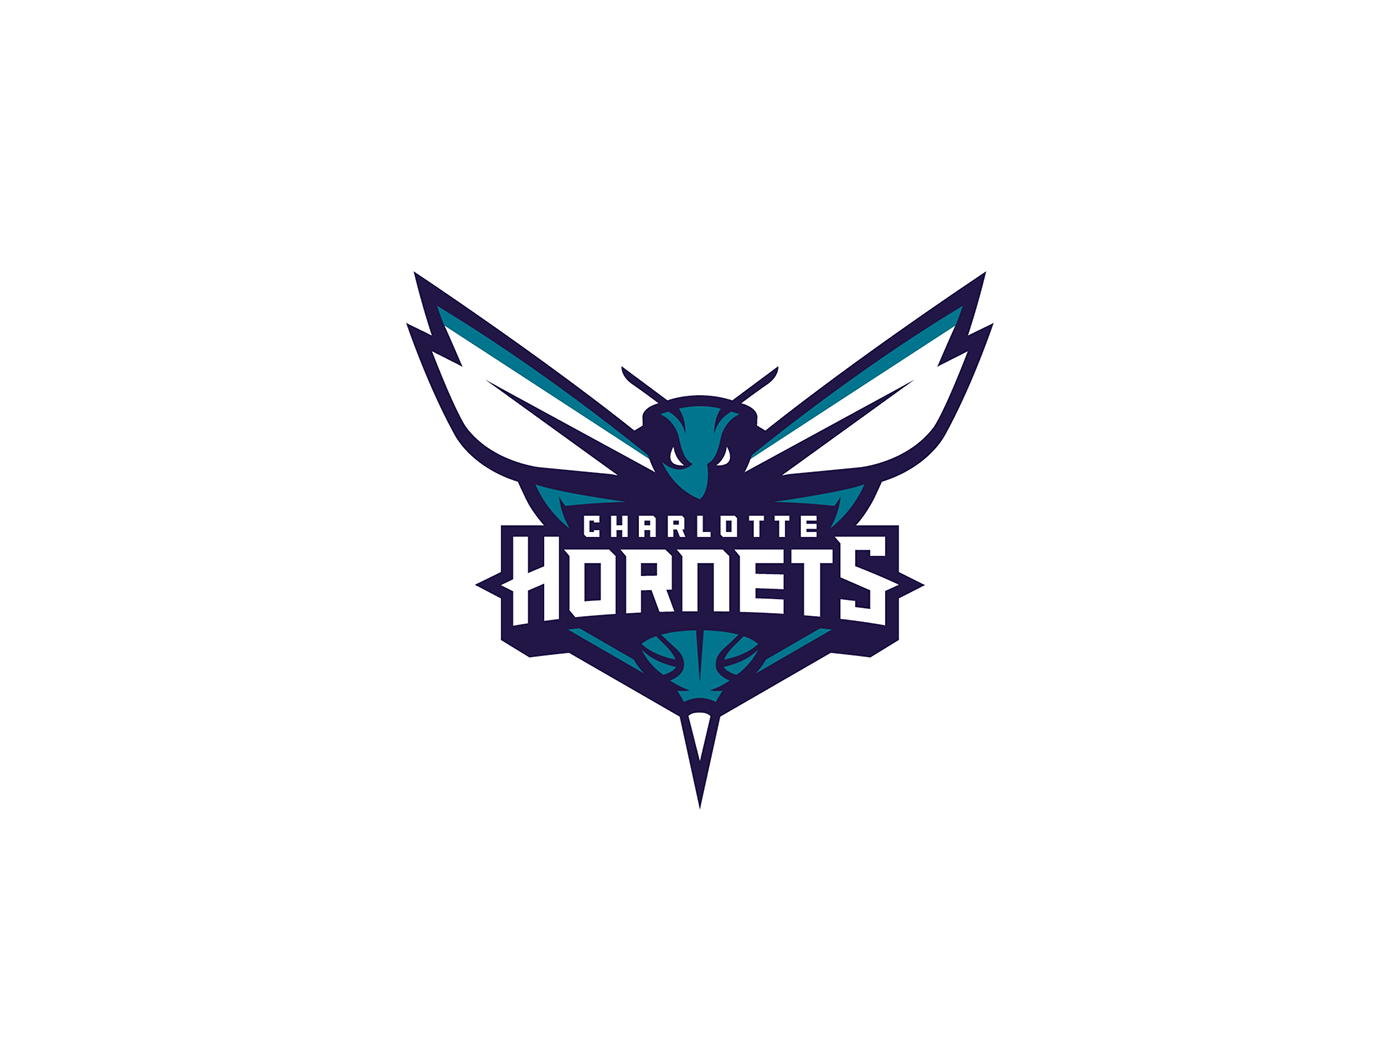 Hornets Logo - Charlotte Hornets primary logo on Behance